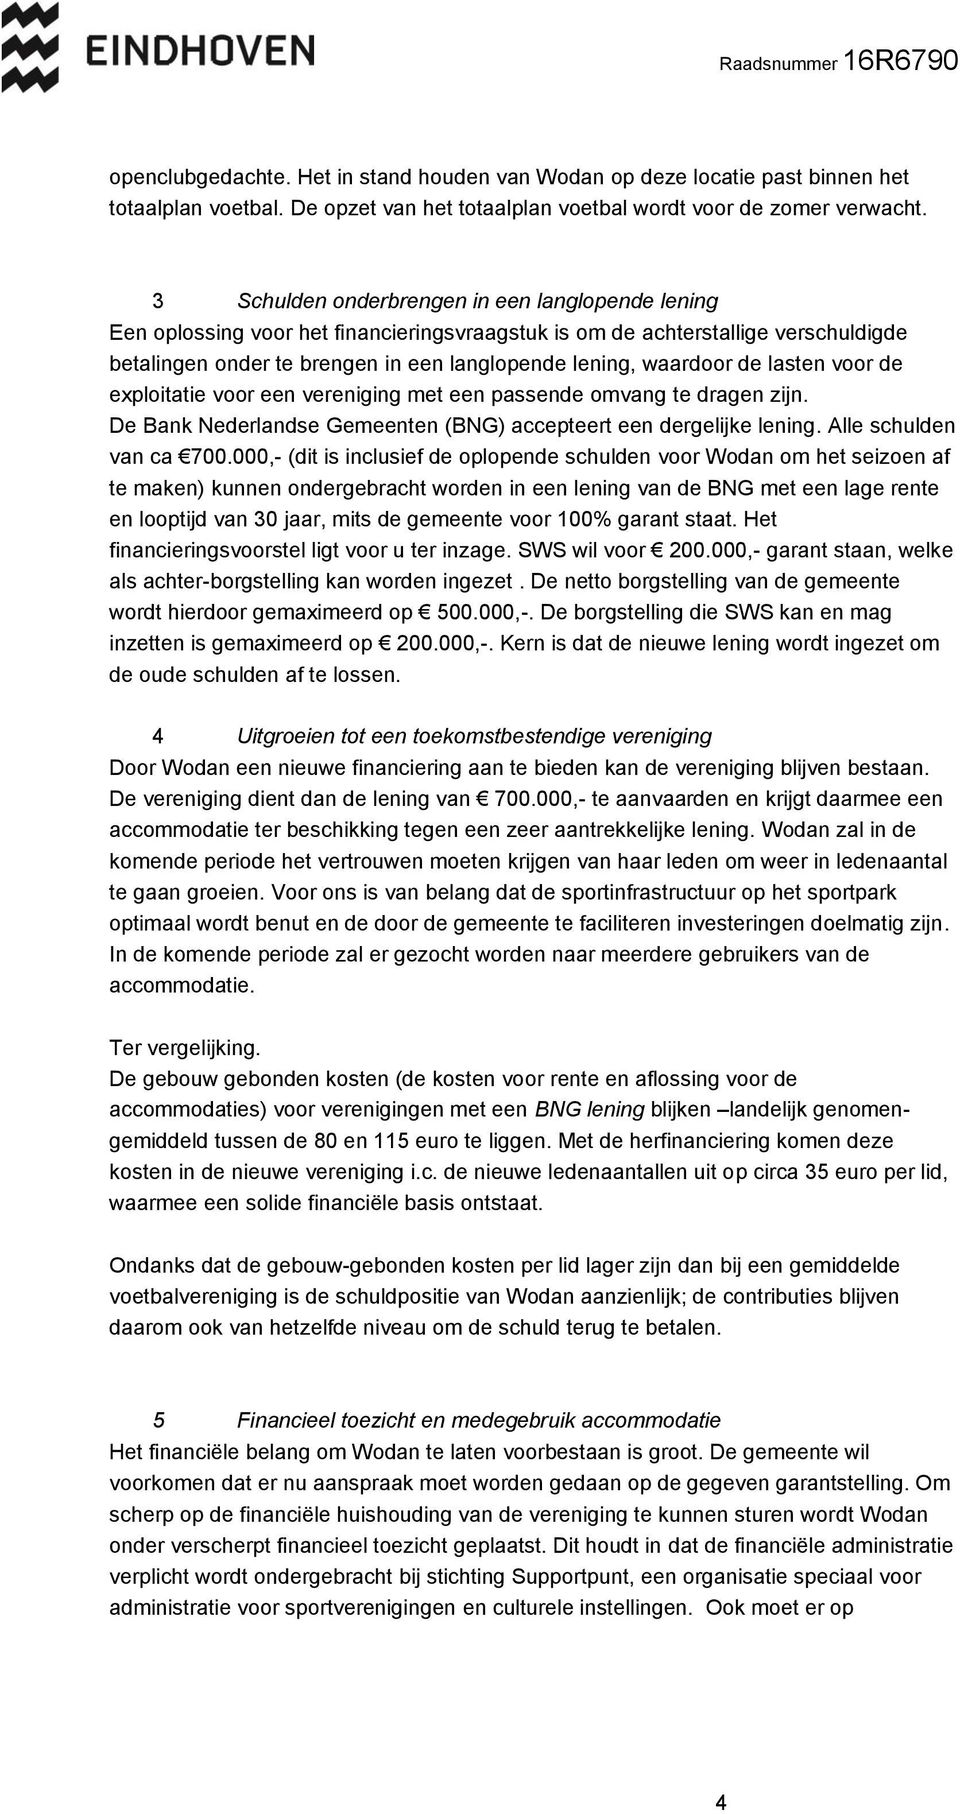 de lasten voor de exploitatie voor een vereniging met een passende omvang te dragen zijn. De Bank Nederlandse Gemeenten (BNG) accepteert een dergelijke lening. Alle schulden van ca 700.